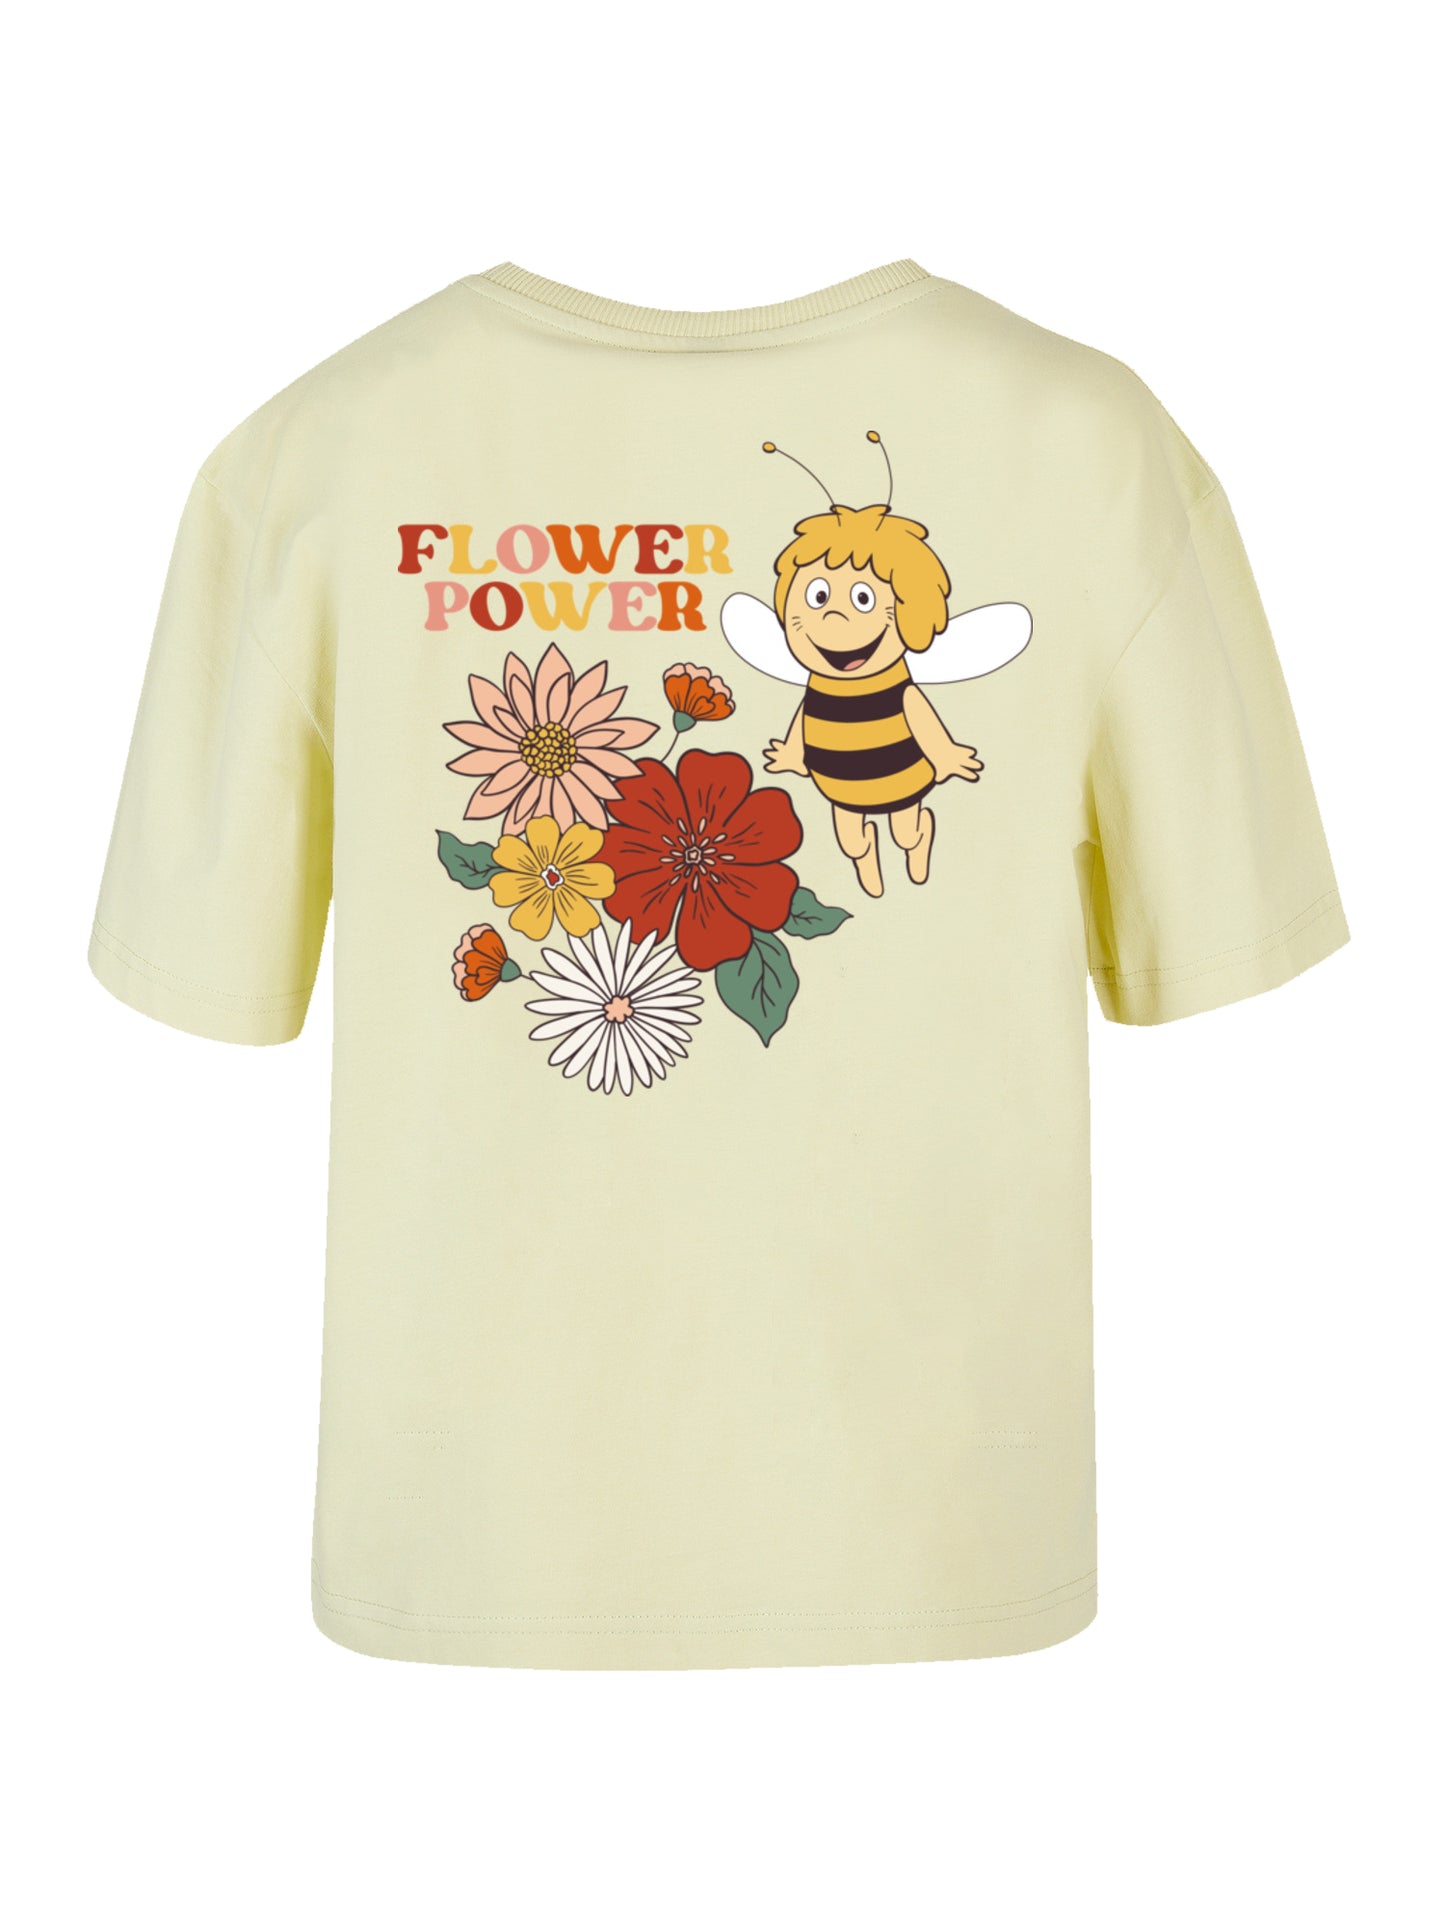 Die Biene Maja Flower Power | Heroes of Childhood | Girls Everyday Tee